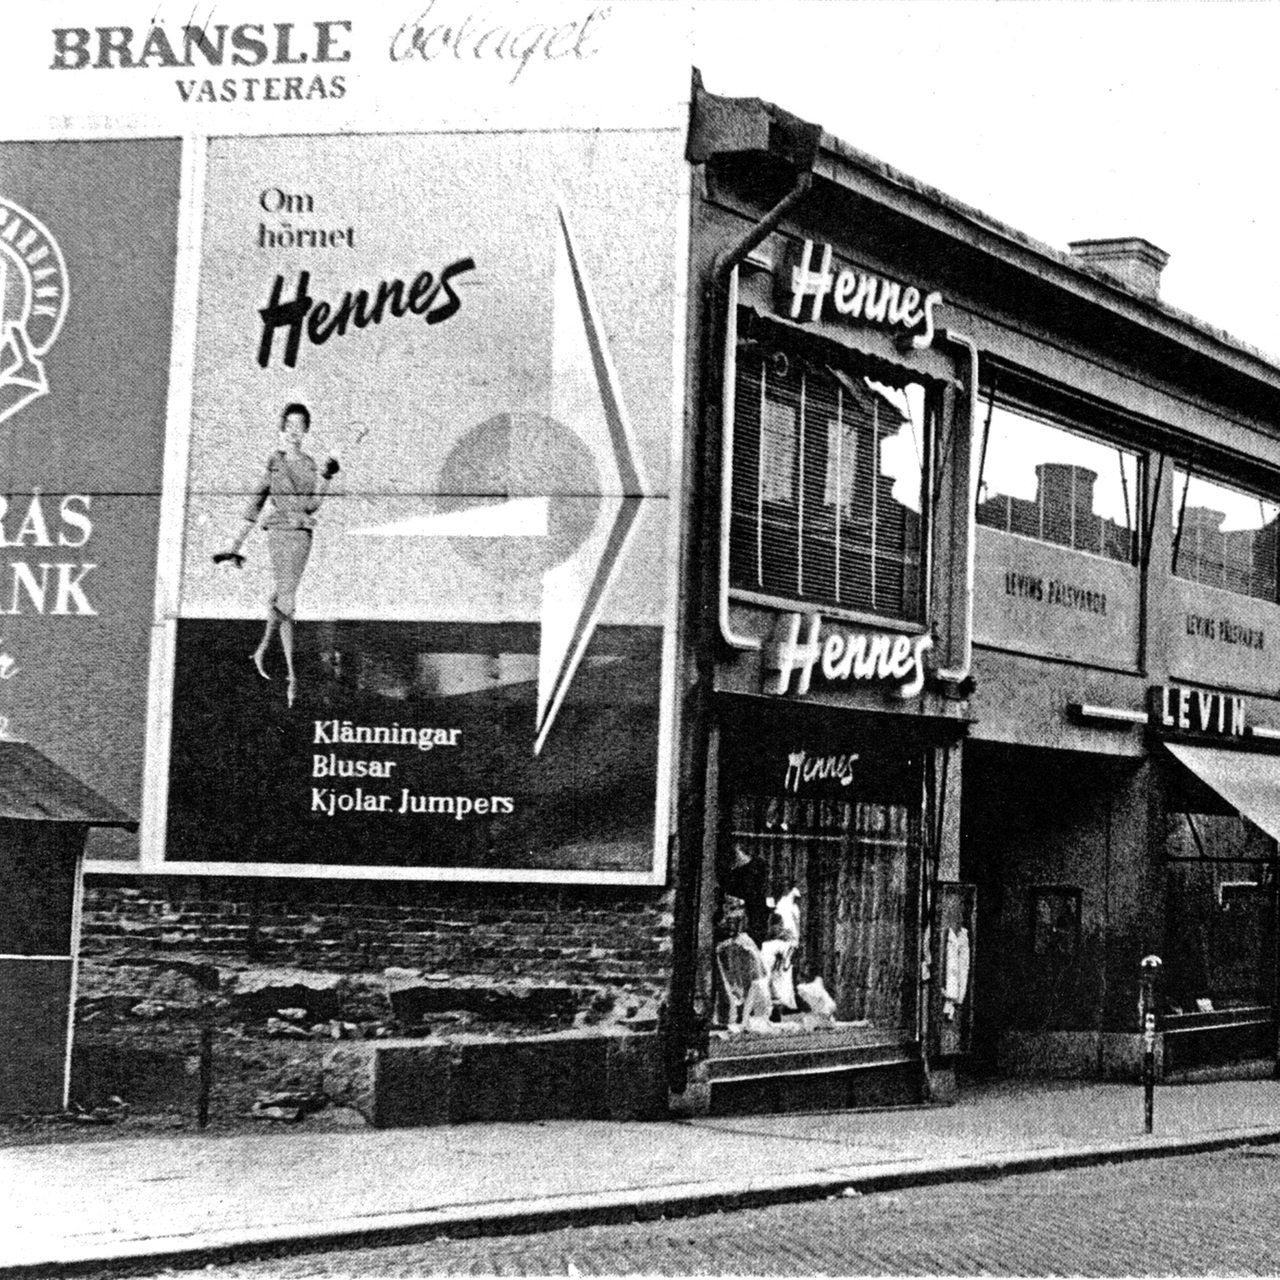 Historische Aufnahme zeigt den ersten H&M Store (Hennes) in Schweden